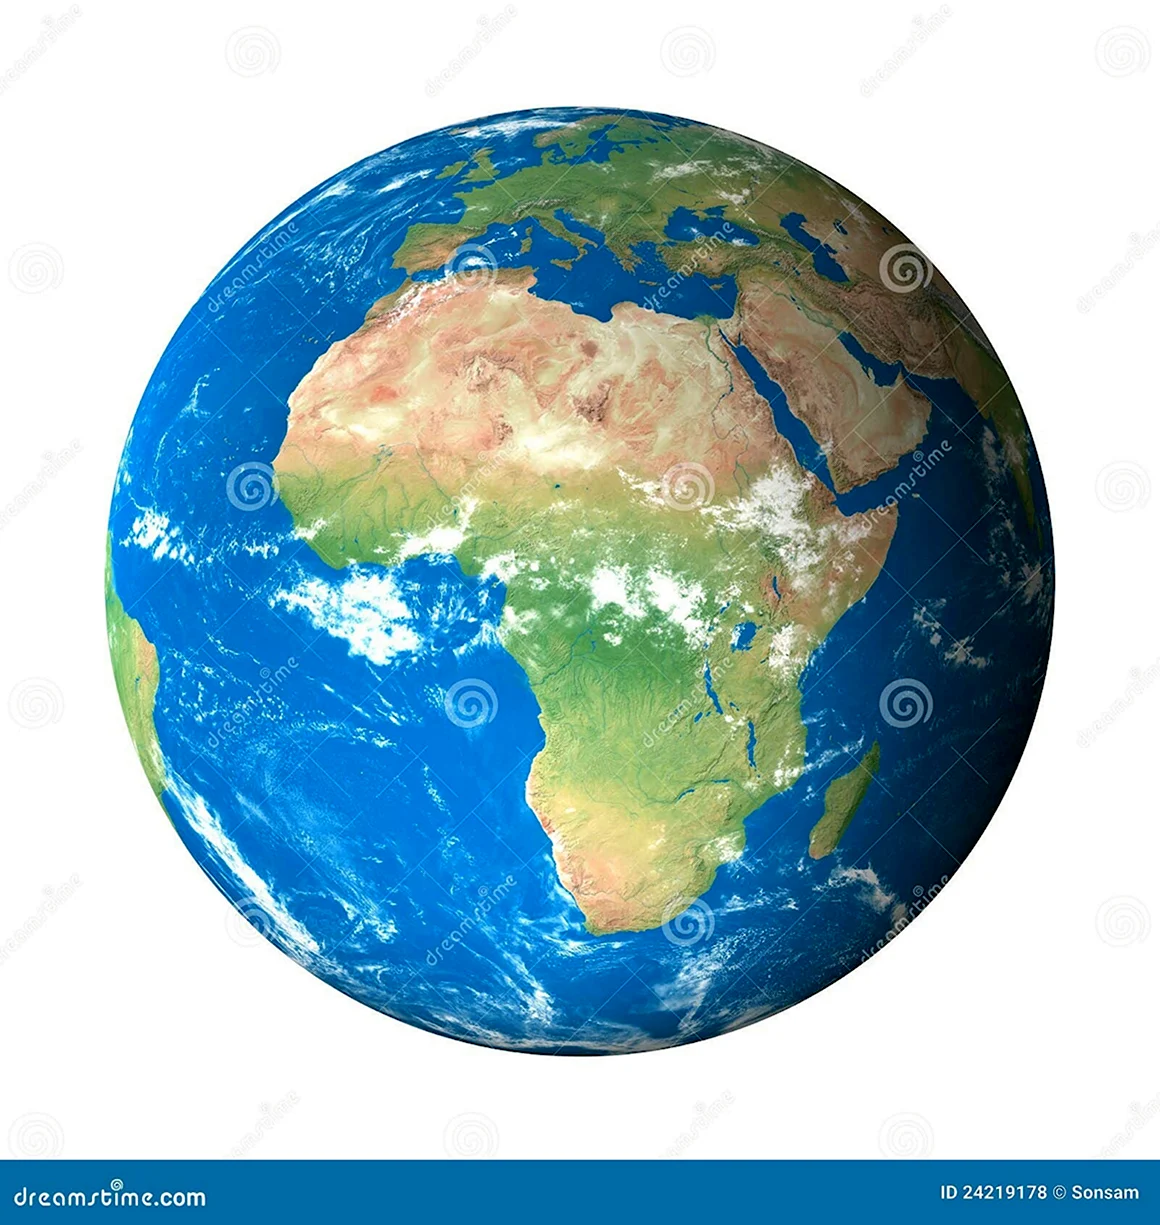 Африка на макете земли